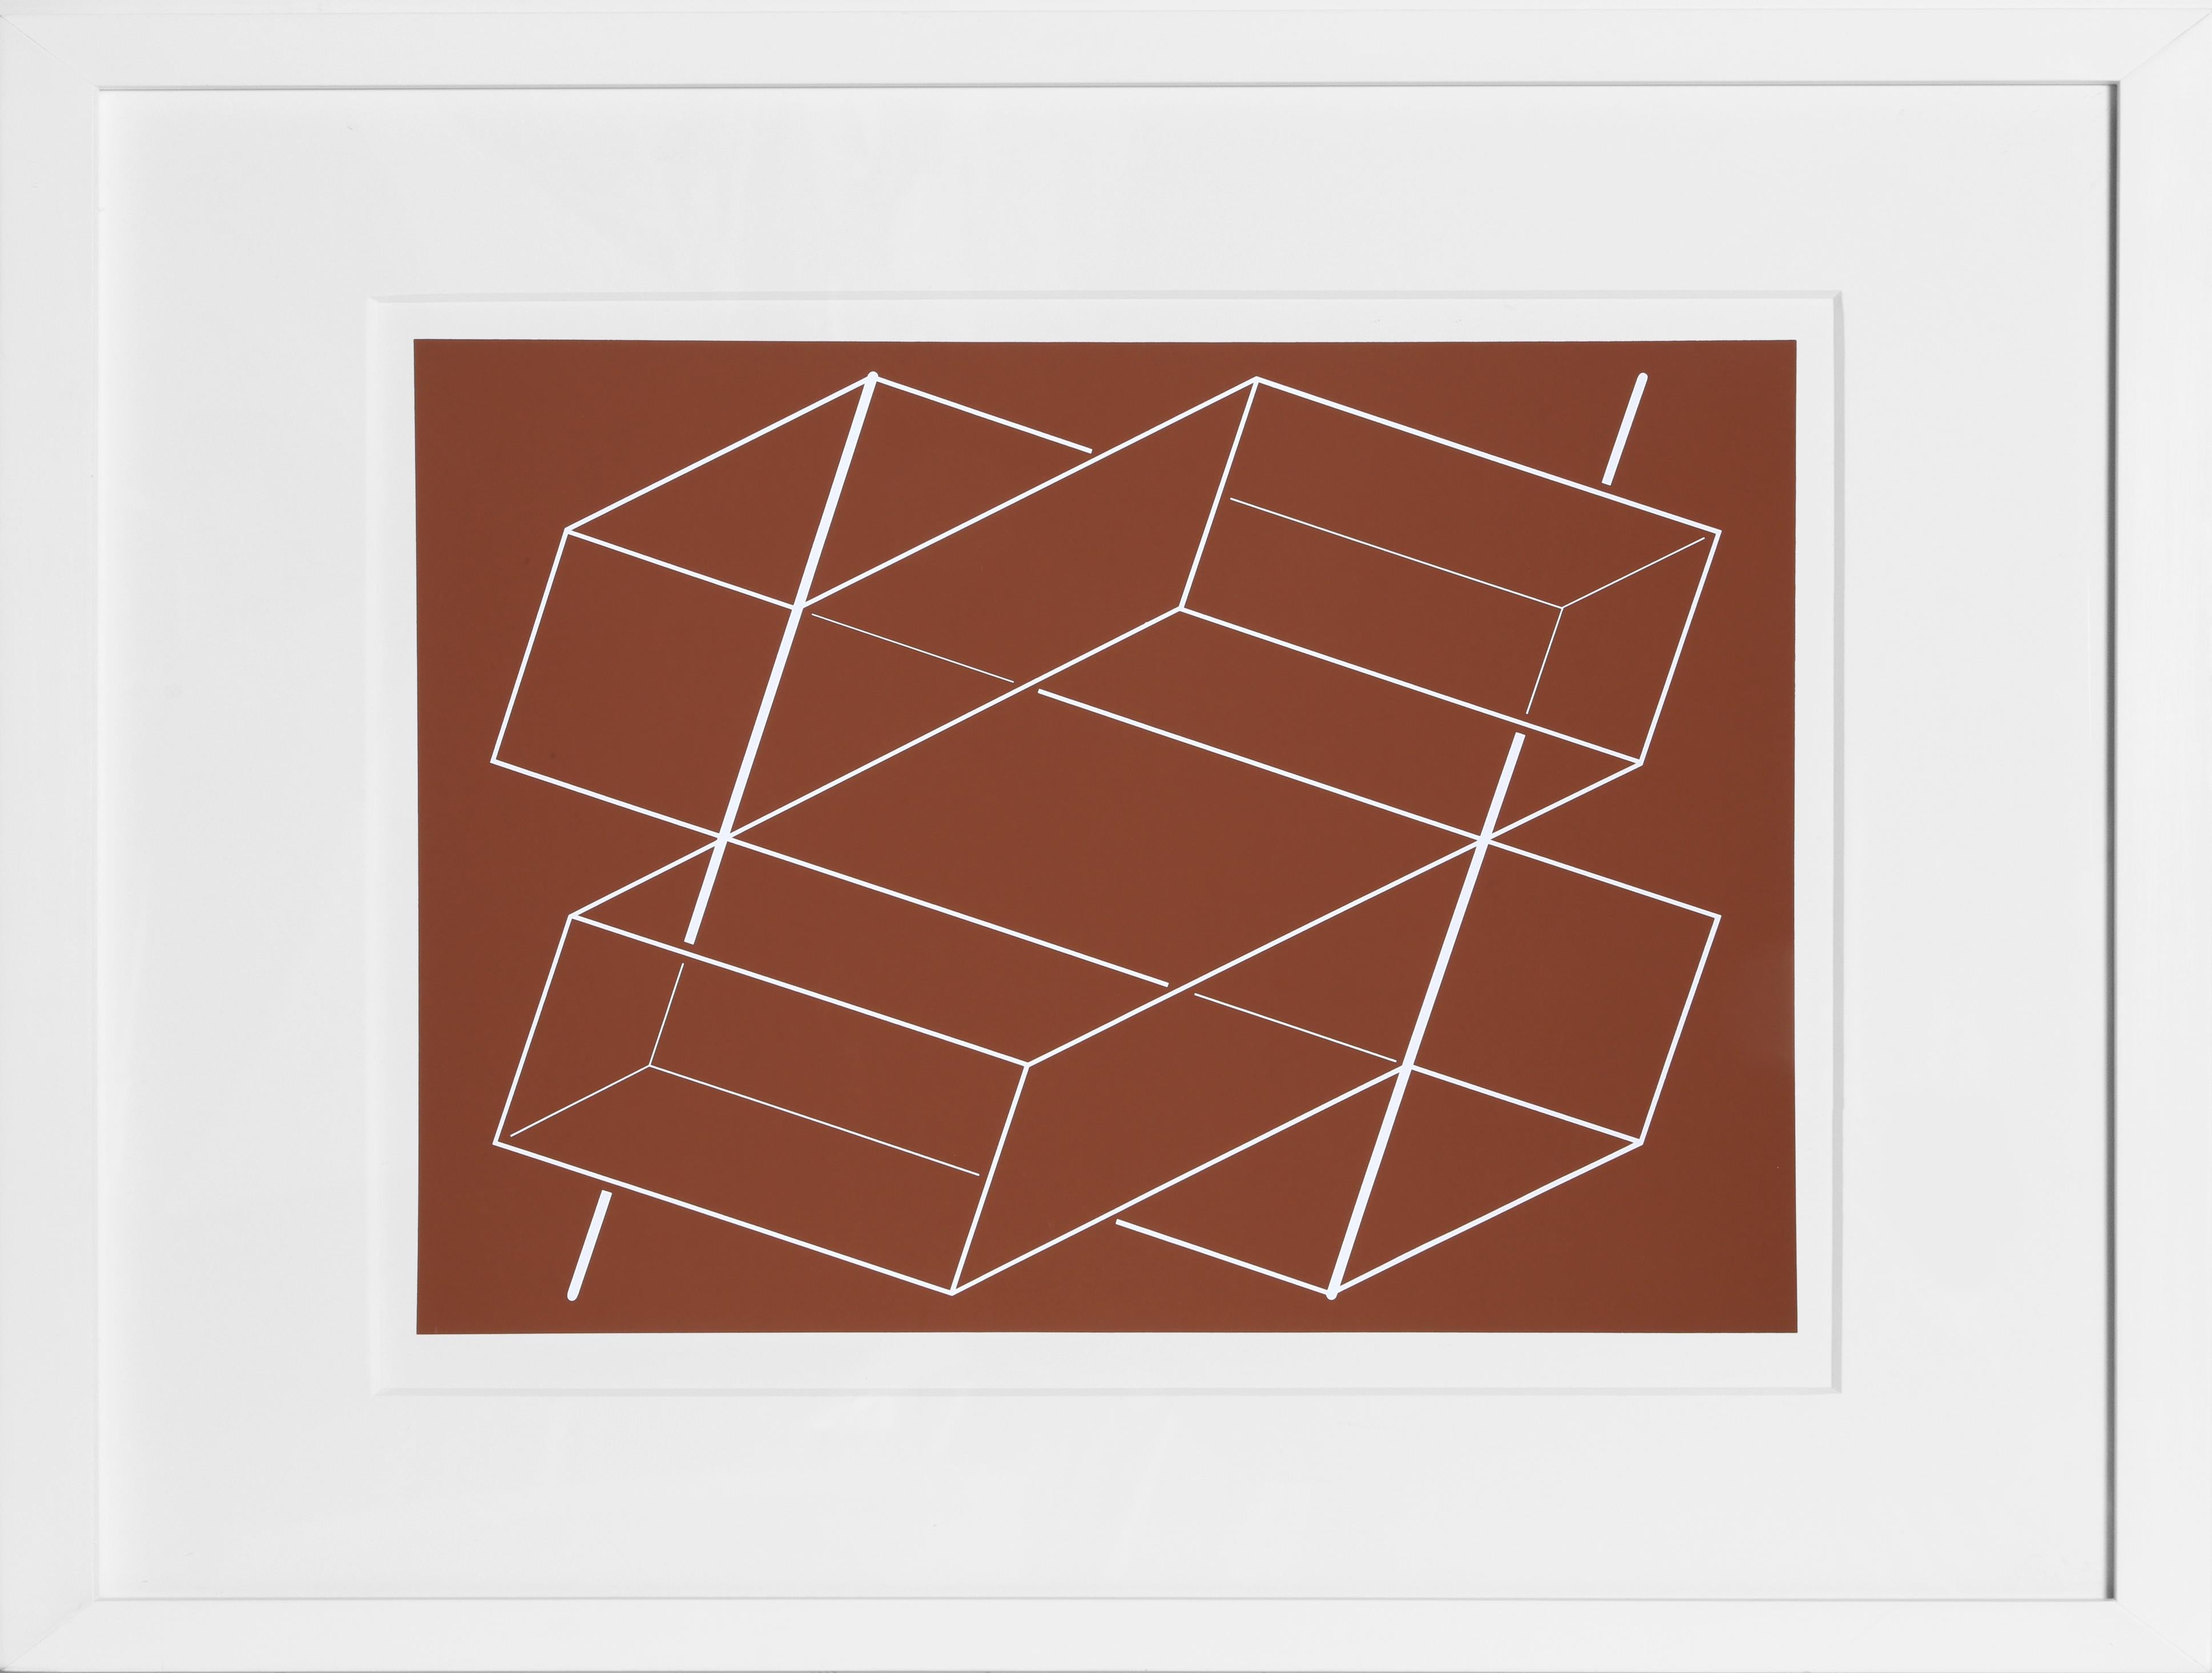 Bands/Posts - P1, F3, I2, sérigraphie abstraite géométrique de Josef Albers